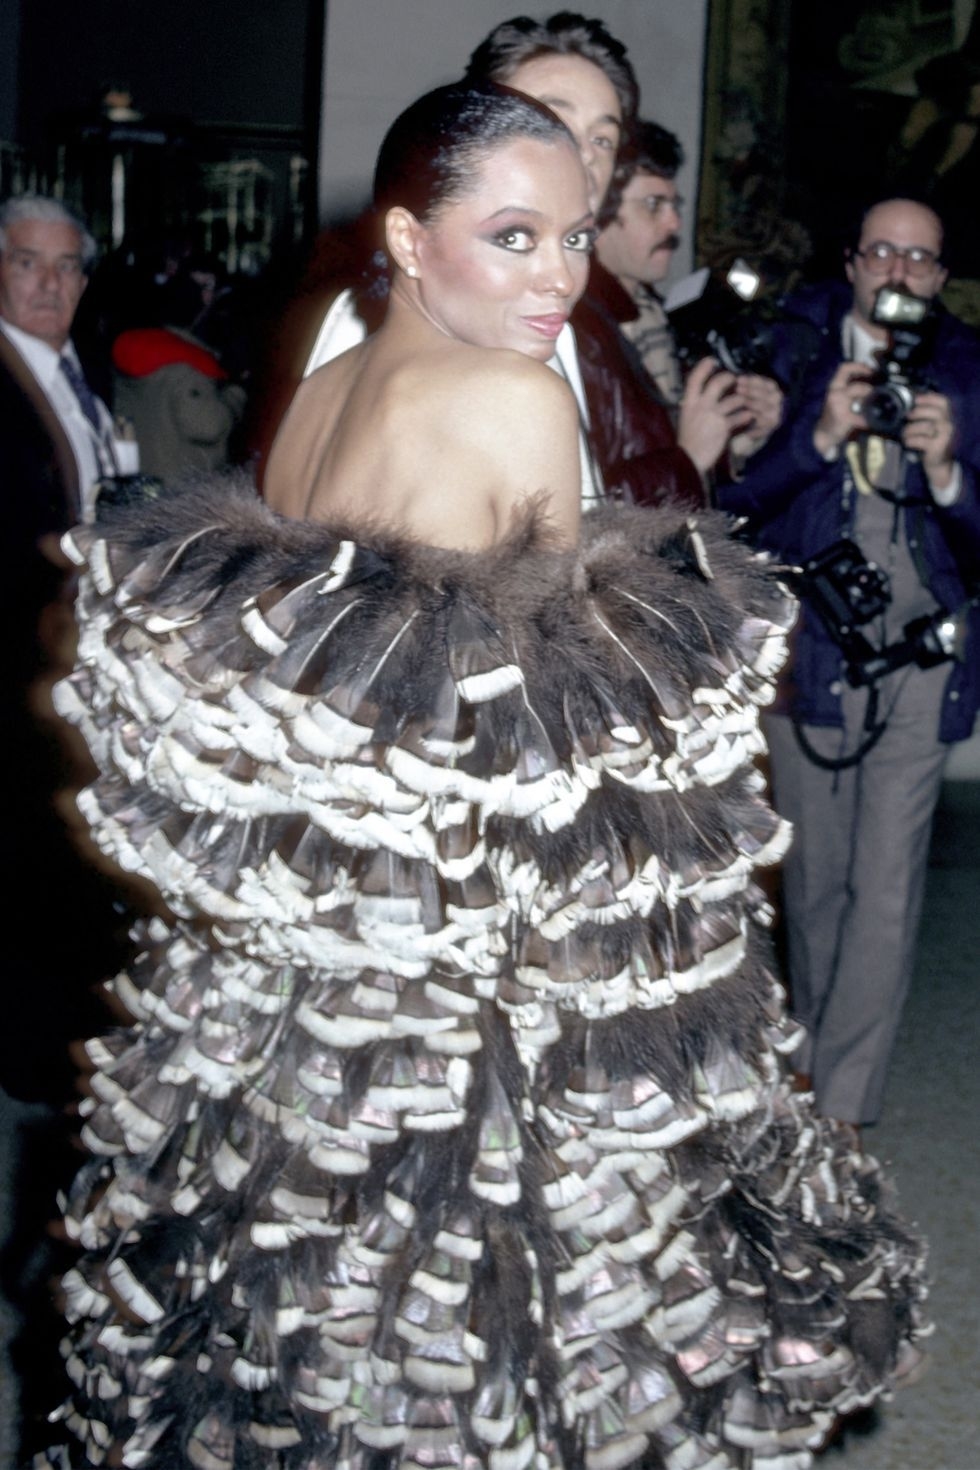 Mujer famosa en evento posando en vestido extravagante con plumas y lazos, rodeada de fotógrafos en el fondo